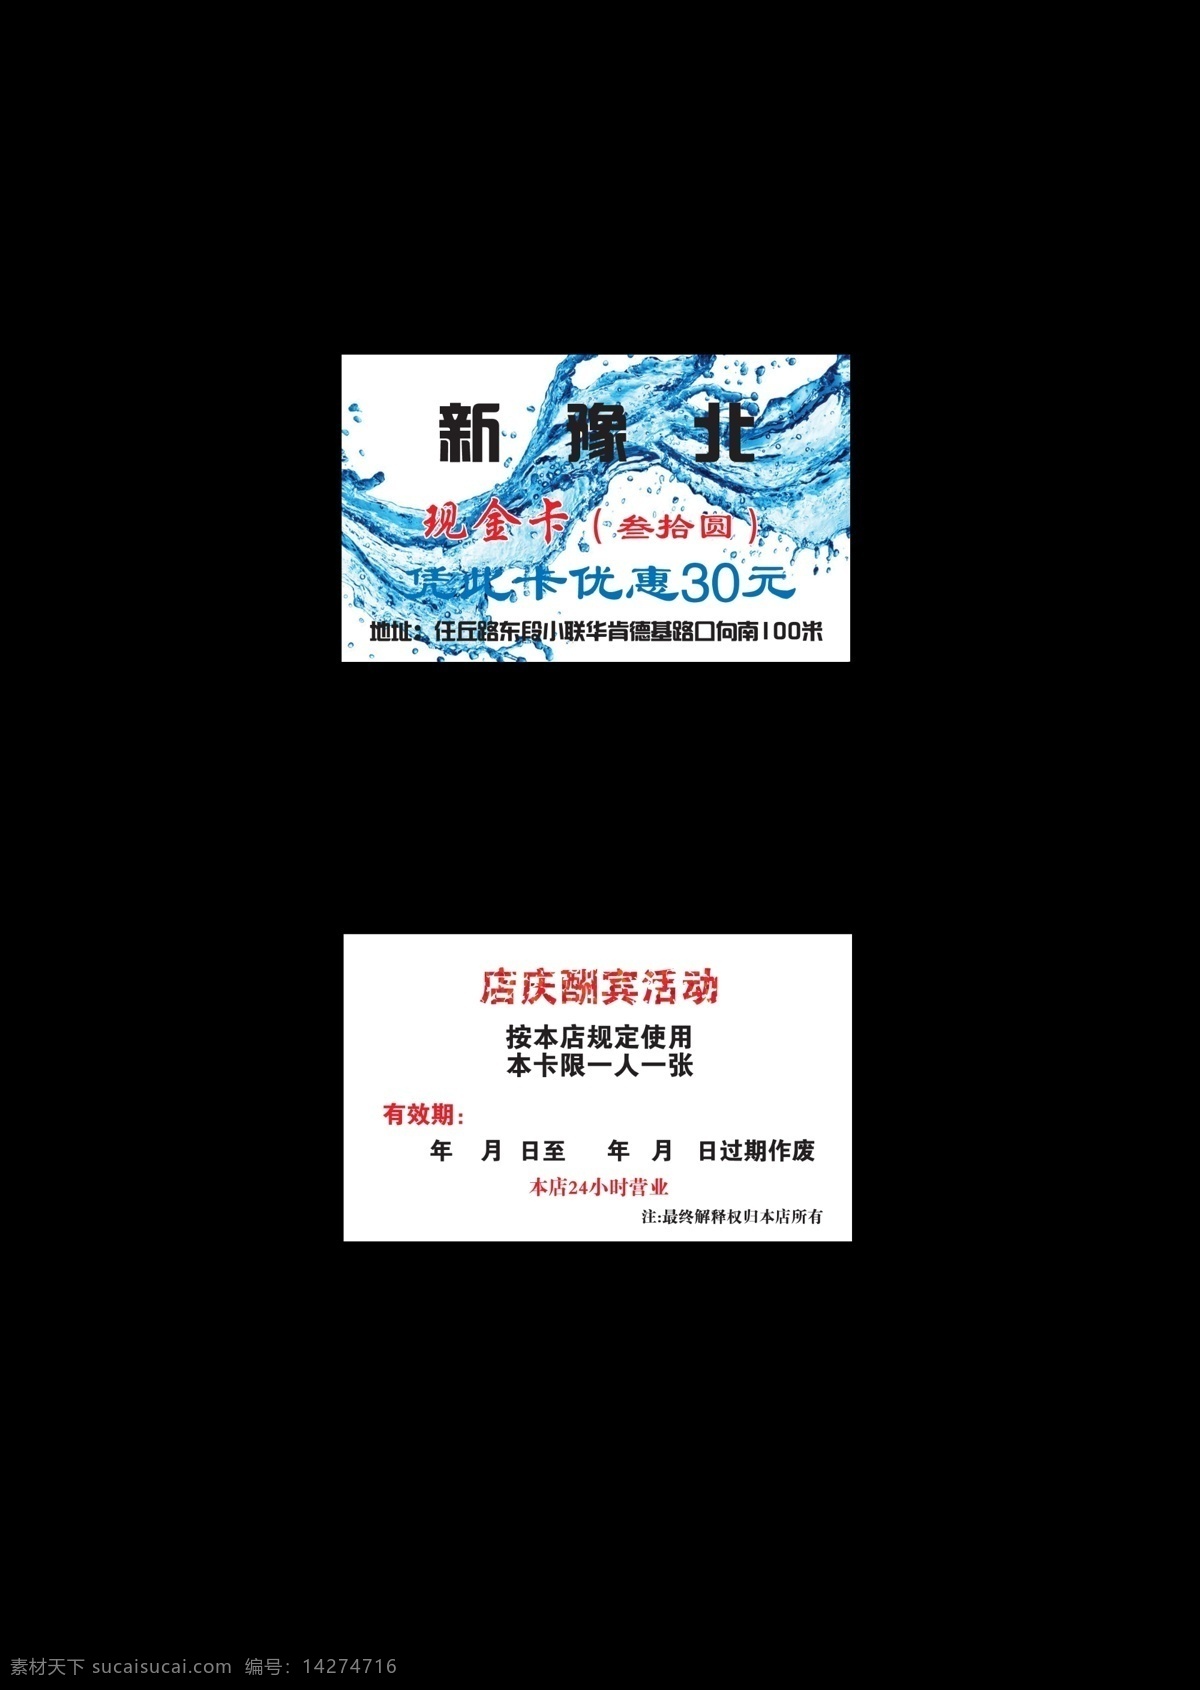 纯净水名片 新豫北名片 纯净水 水珠 名片卡片 广告设计模板 源文件